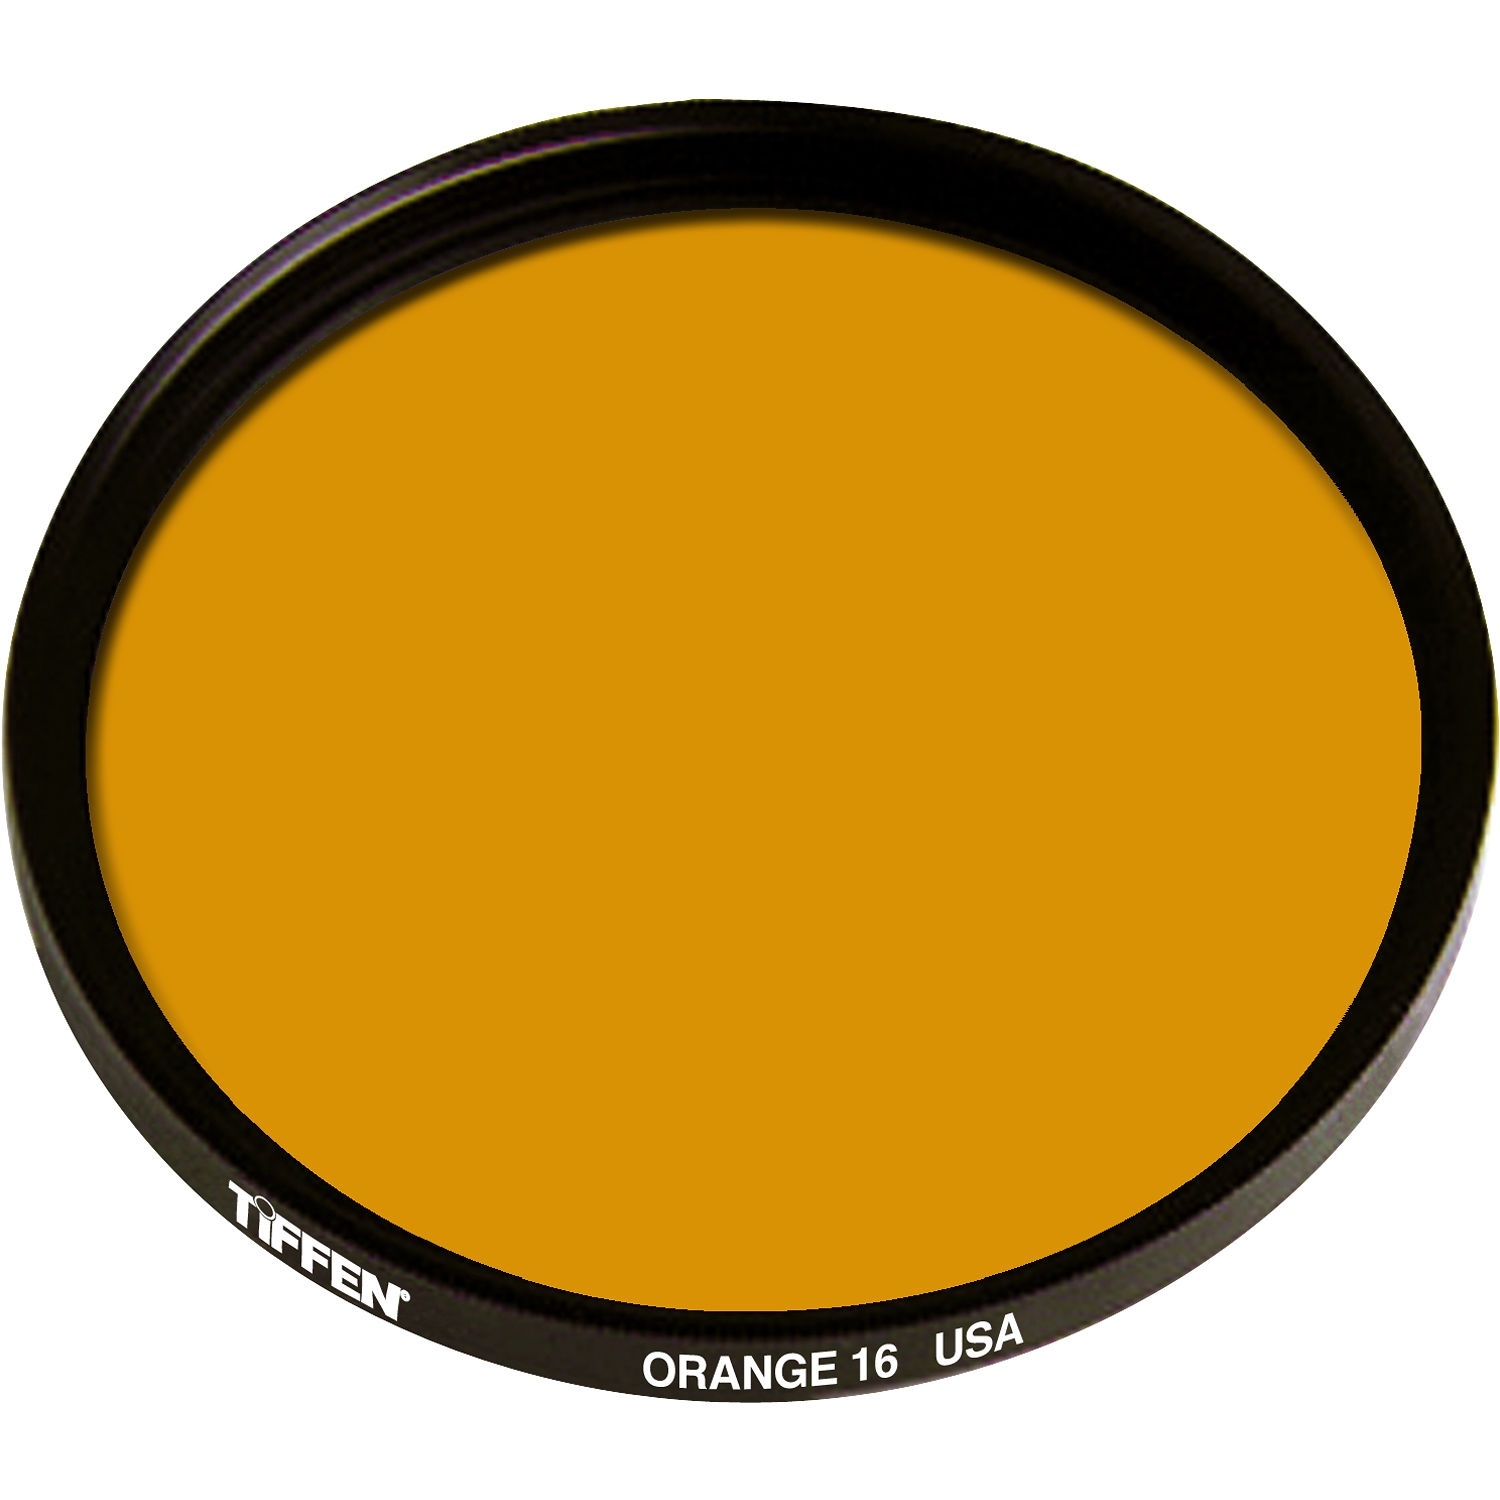 Tiffen 16 Orange Filter (52mm)